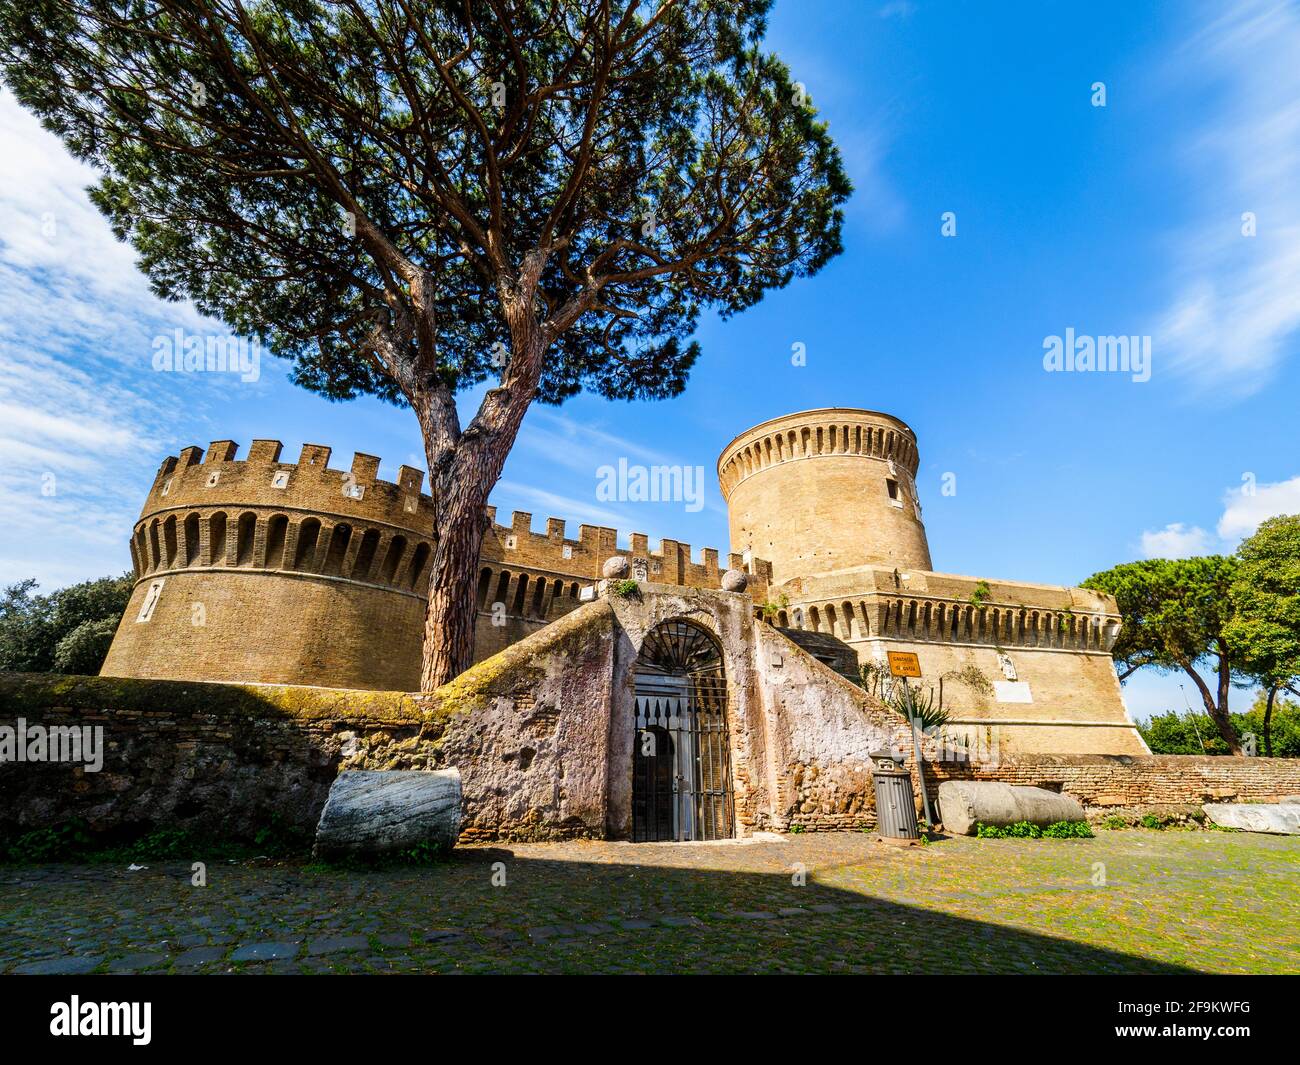 Castello di Giulio II in Ostia Antica - Rome, Italy Stock Photo